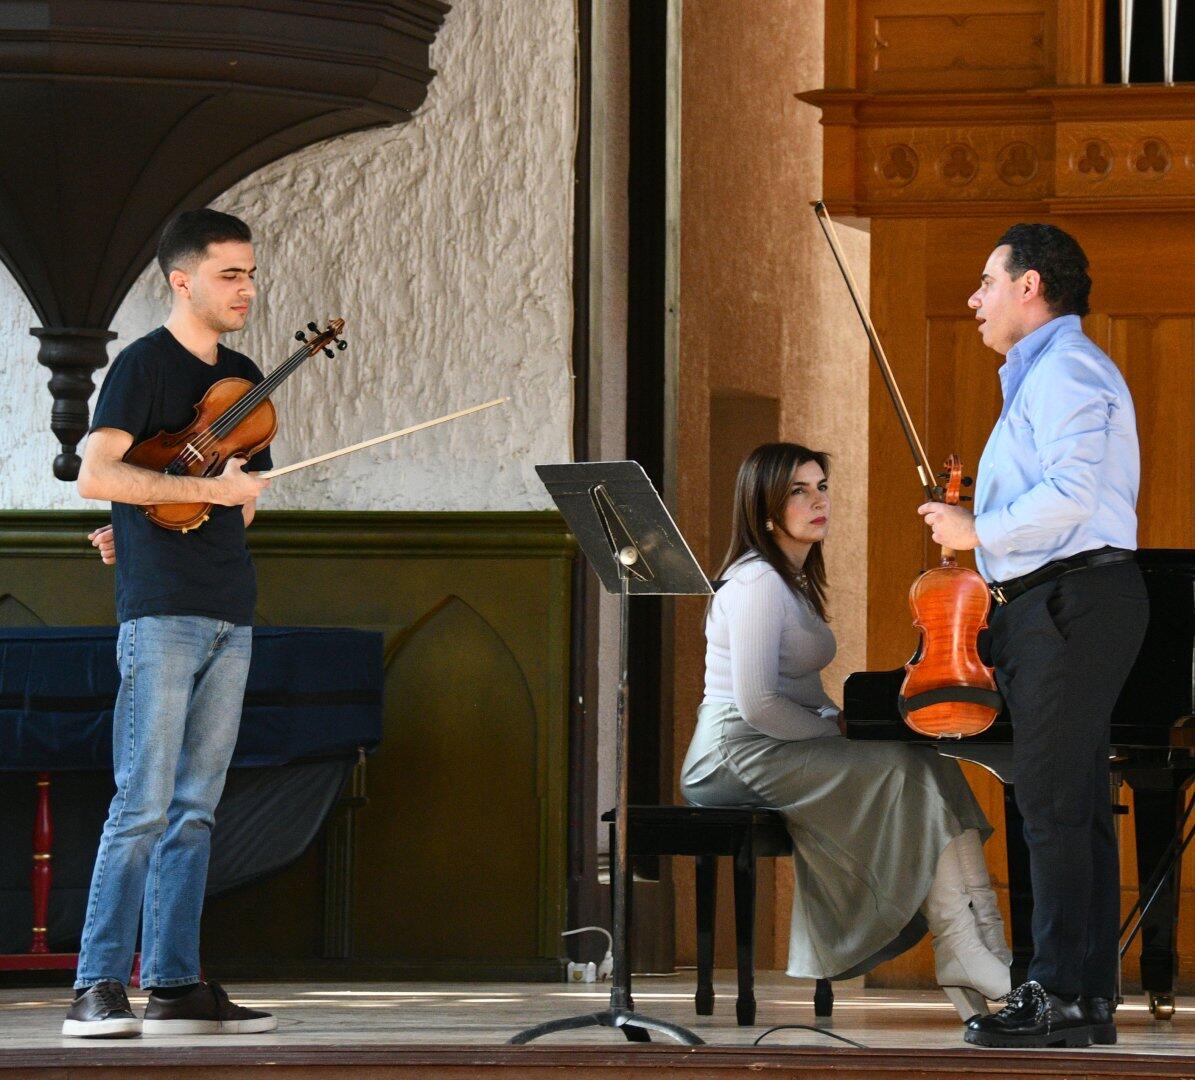 Известный музыкант из Германии провел в Баку мастер-класс